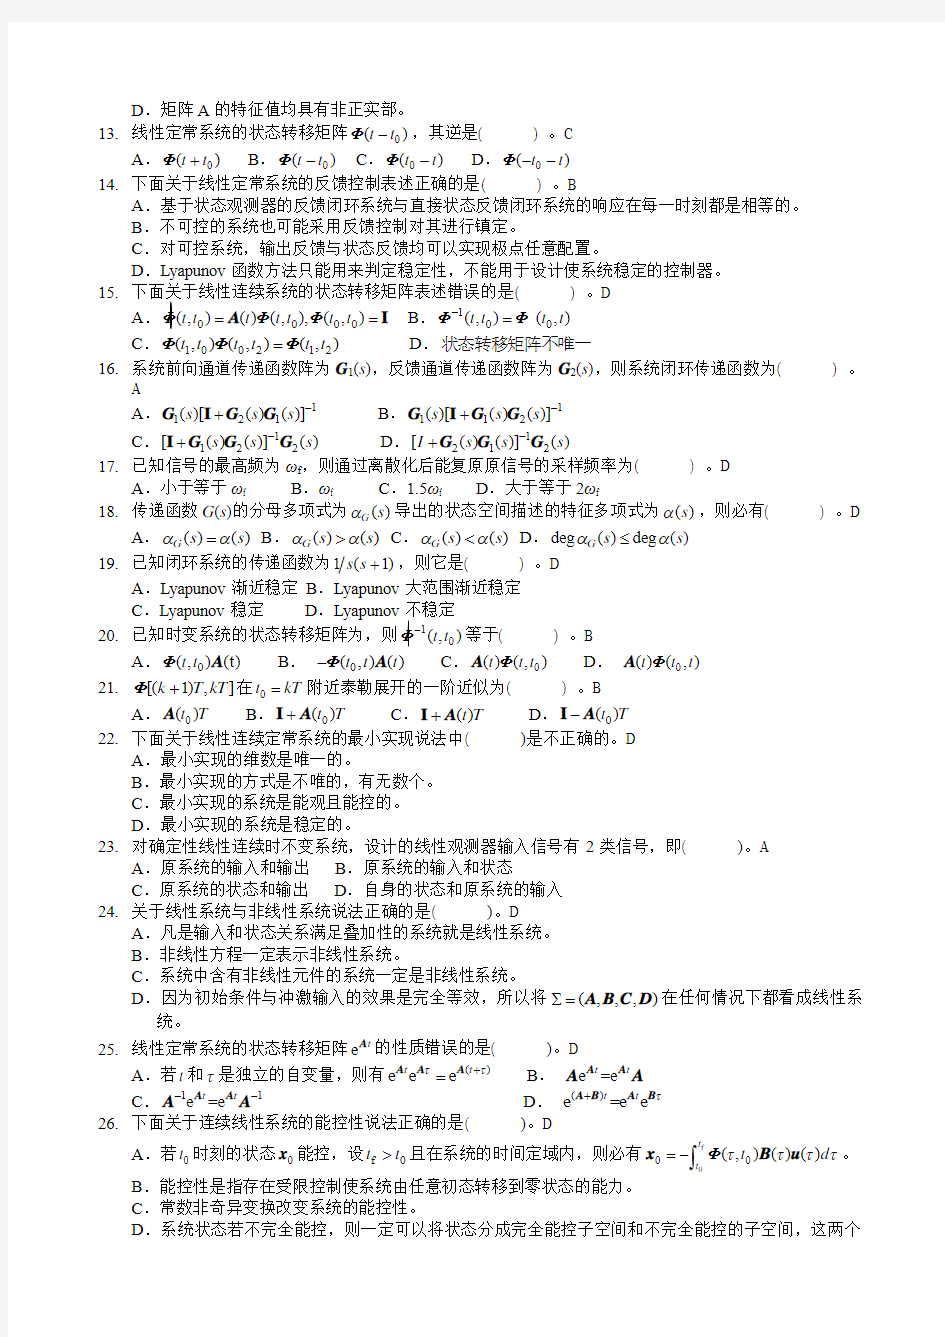 广西大学现代控制理论期末考试题库之选择题含答案.pdf